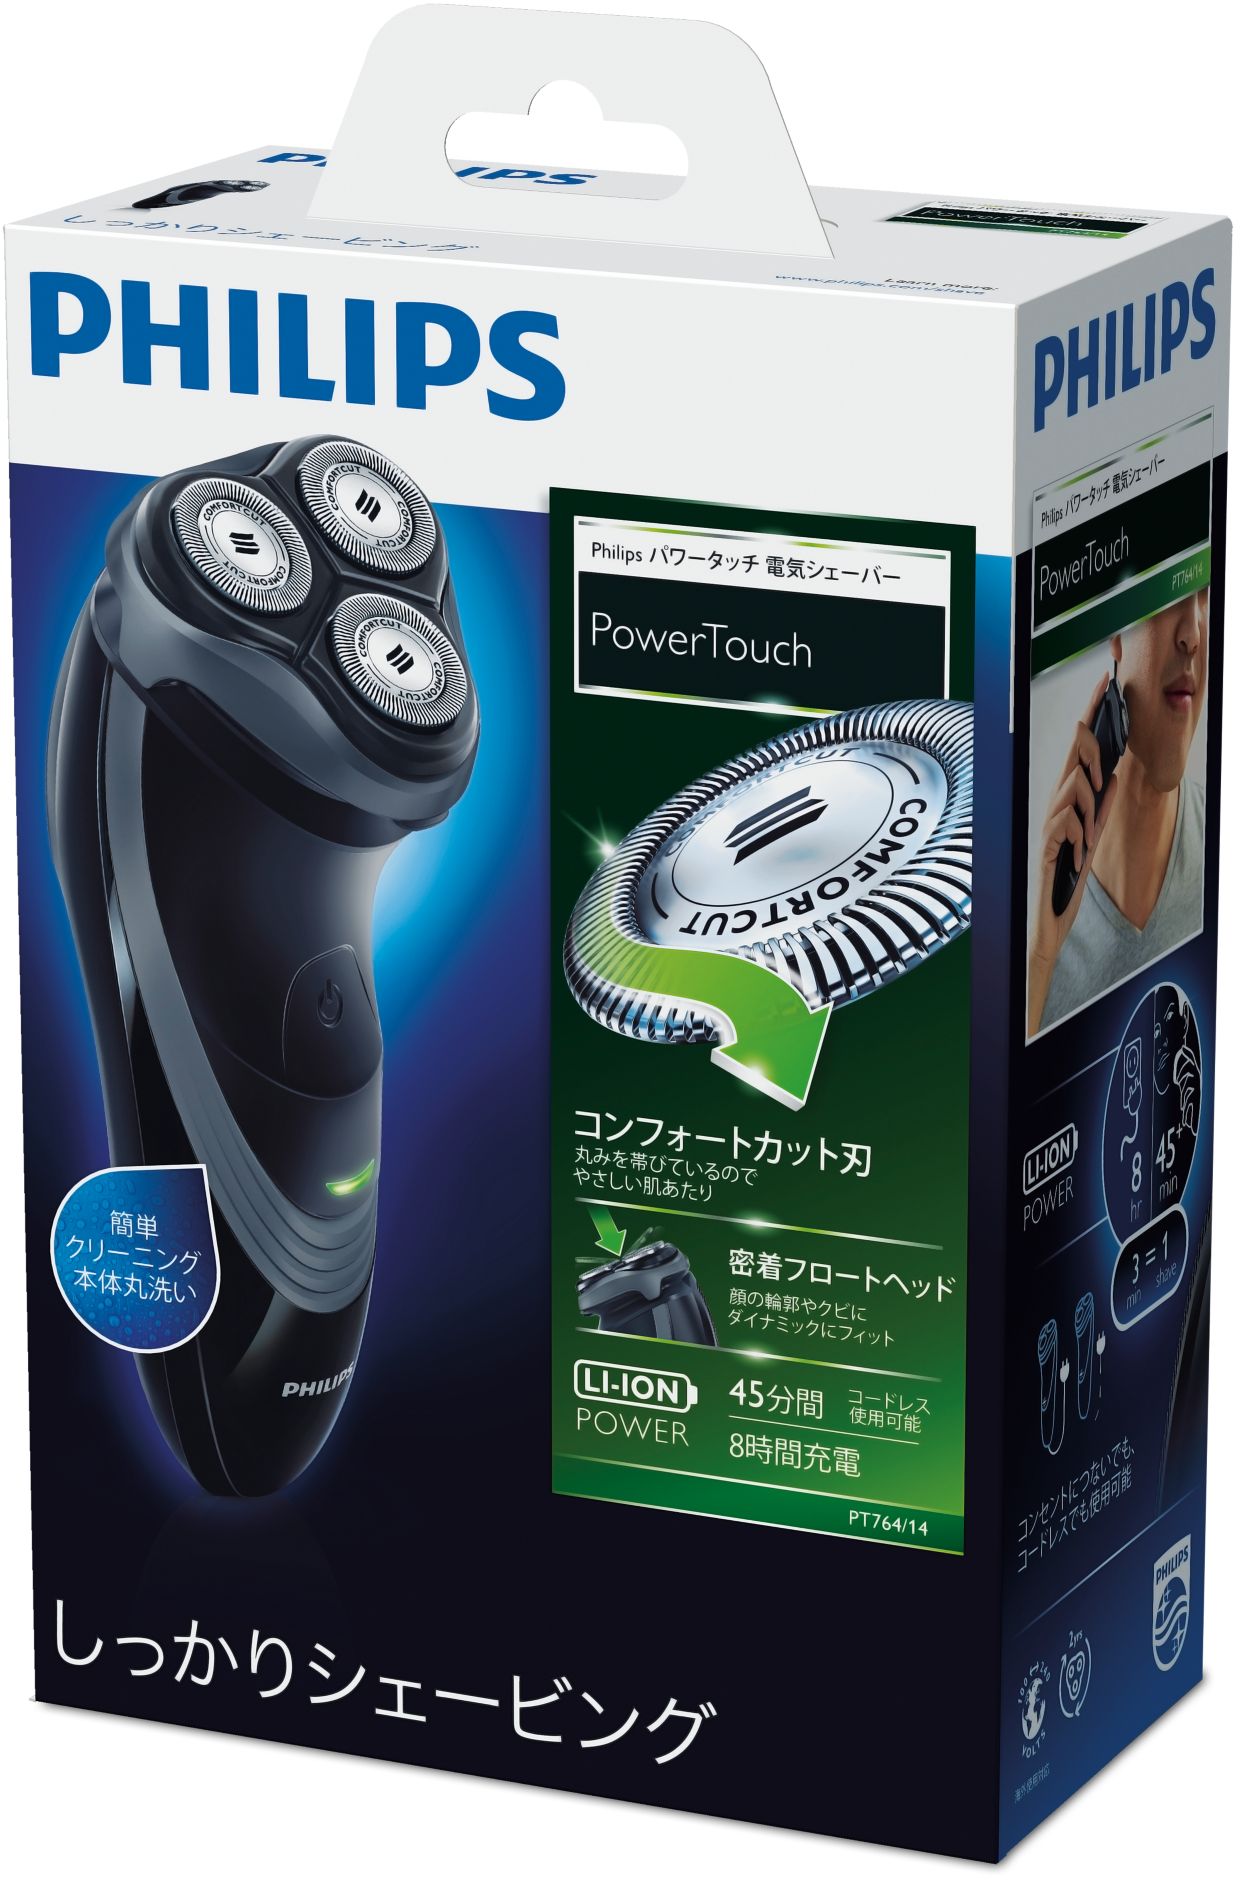 ドライ電気シェーバー PT764/14 | Philips